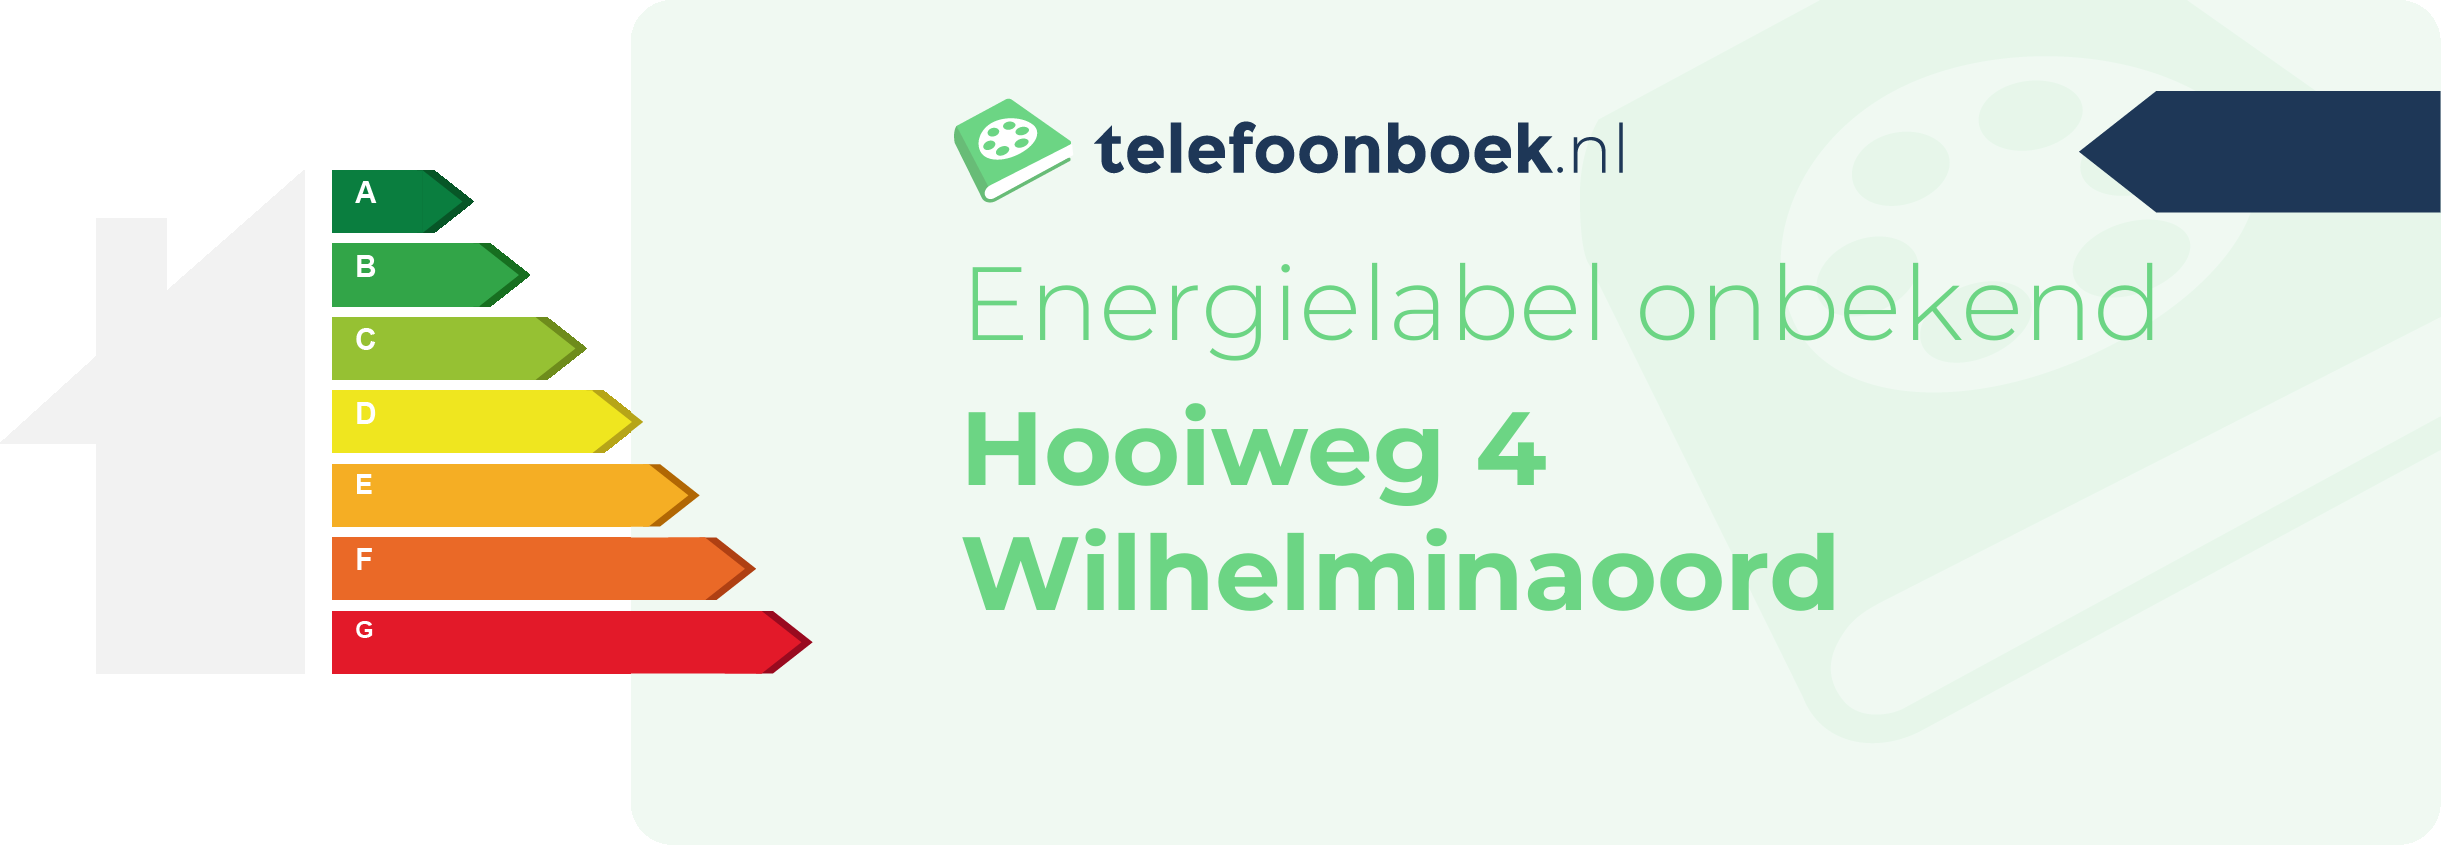 Energielabel Hooiweg 4 Wilhelminaoord